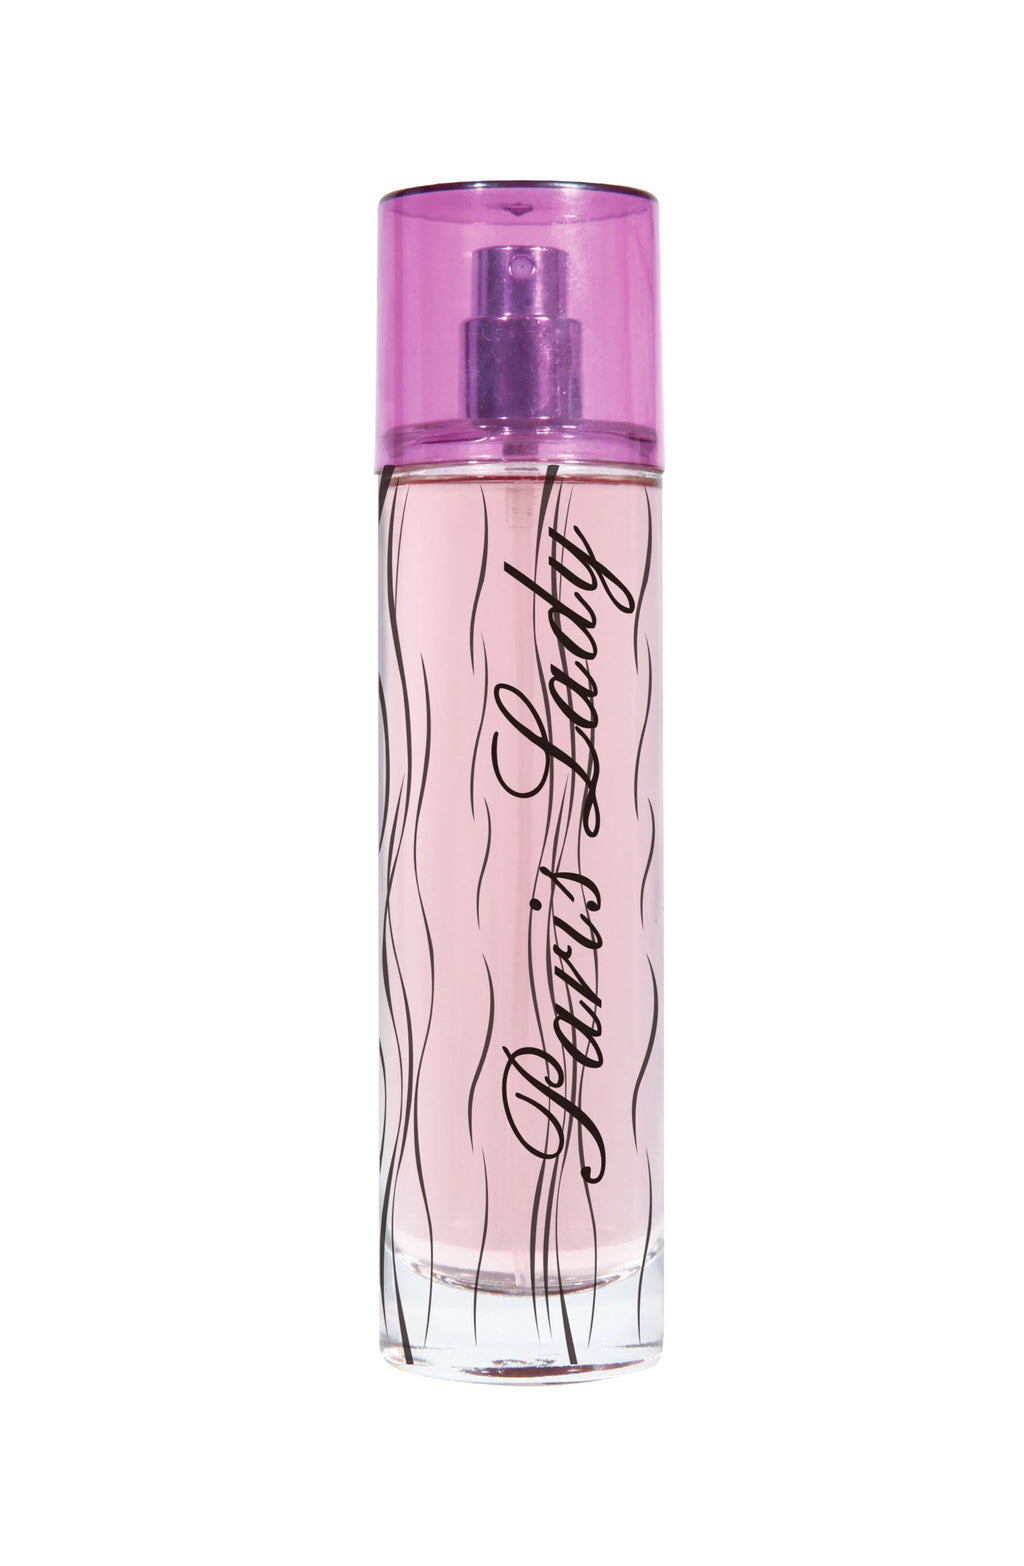 Paris Lady Perfume Bottle